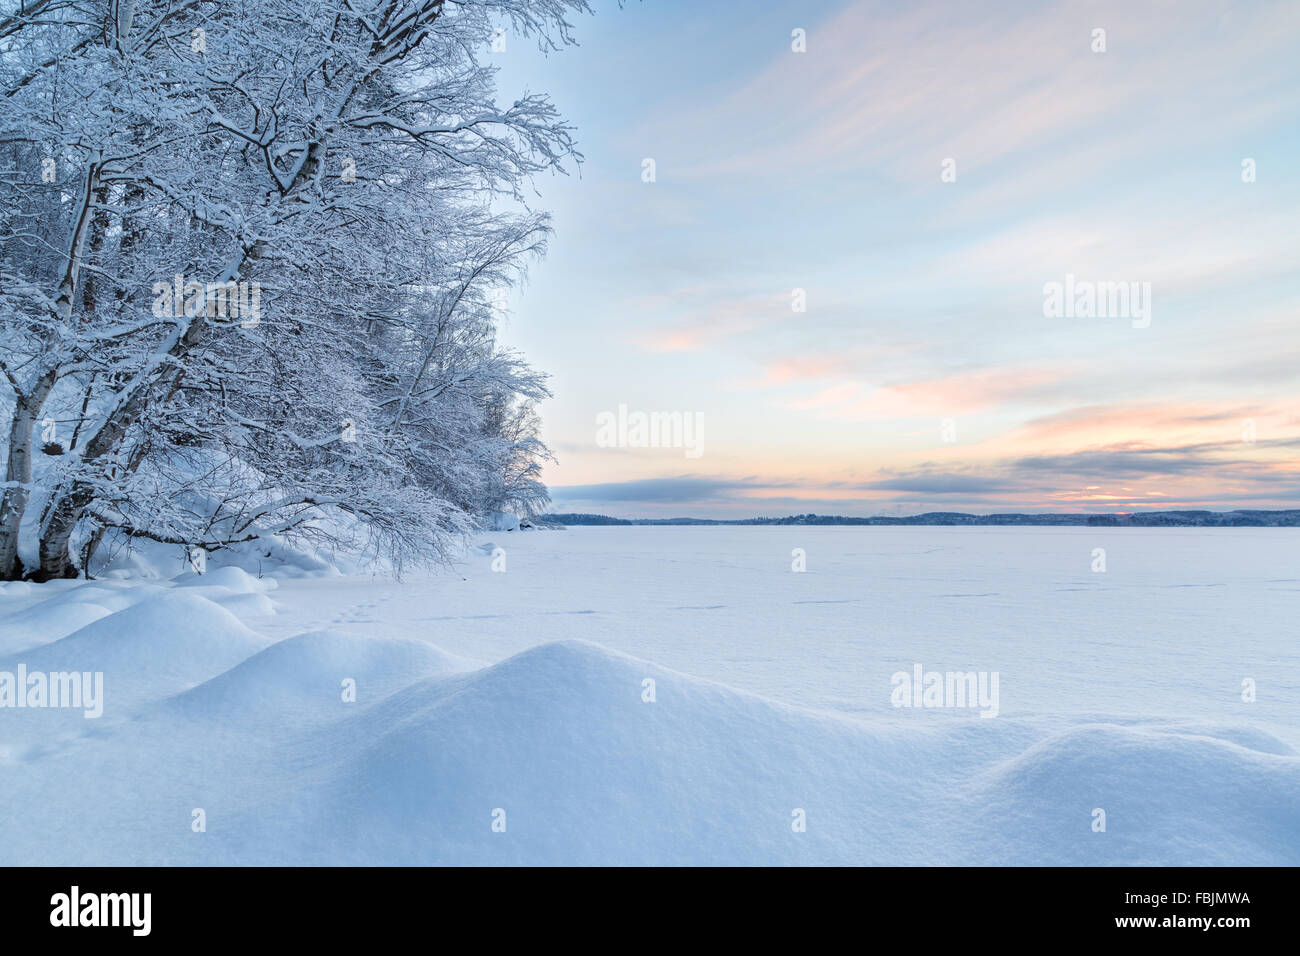 Snowbanks, alberi innevati e il lago a Tampere, in Finlandia al mattino in inverno. Foto Stock